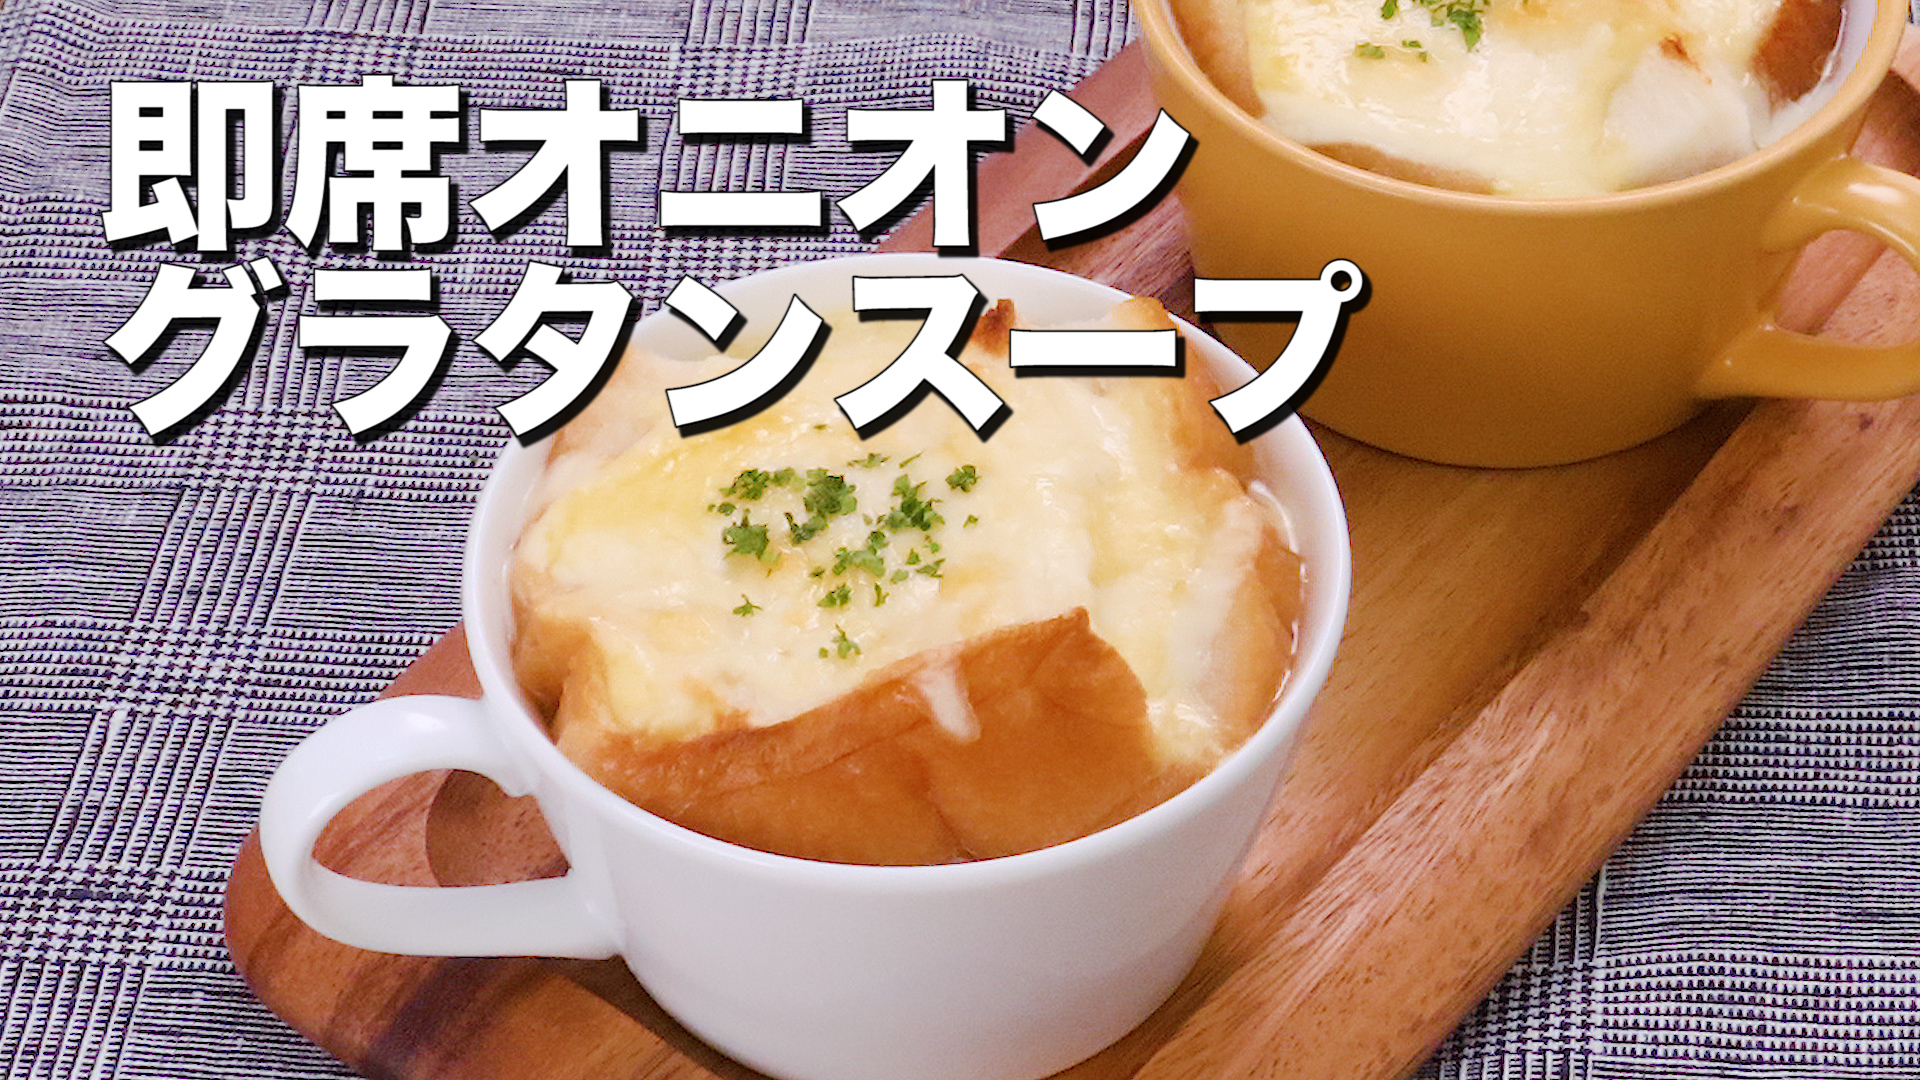 マグカップ1つで出来る♪即席オニオングラタンスープ - DELISH KITCHEN - デリッシュキッチン | Yahoo! JAPAN